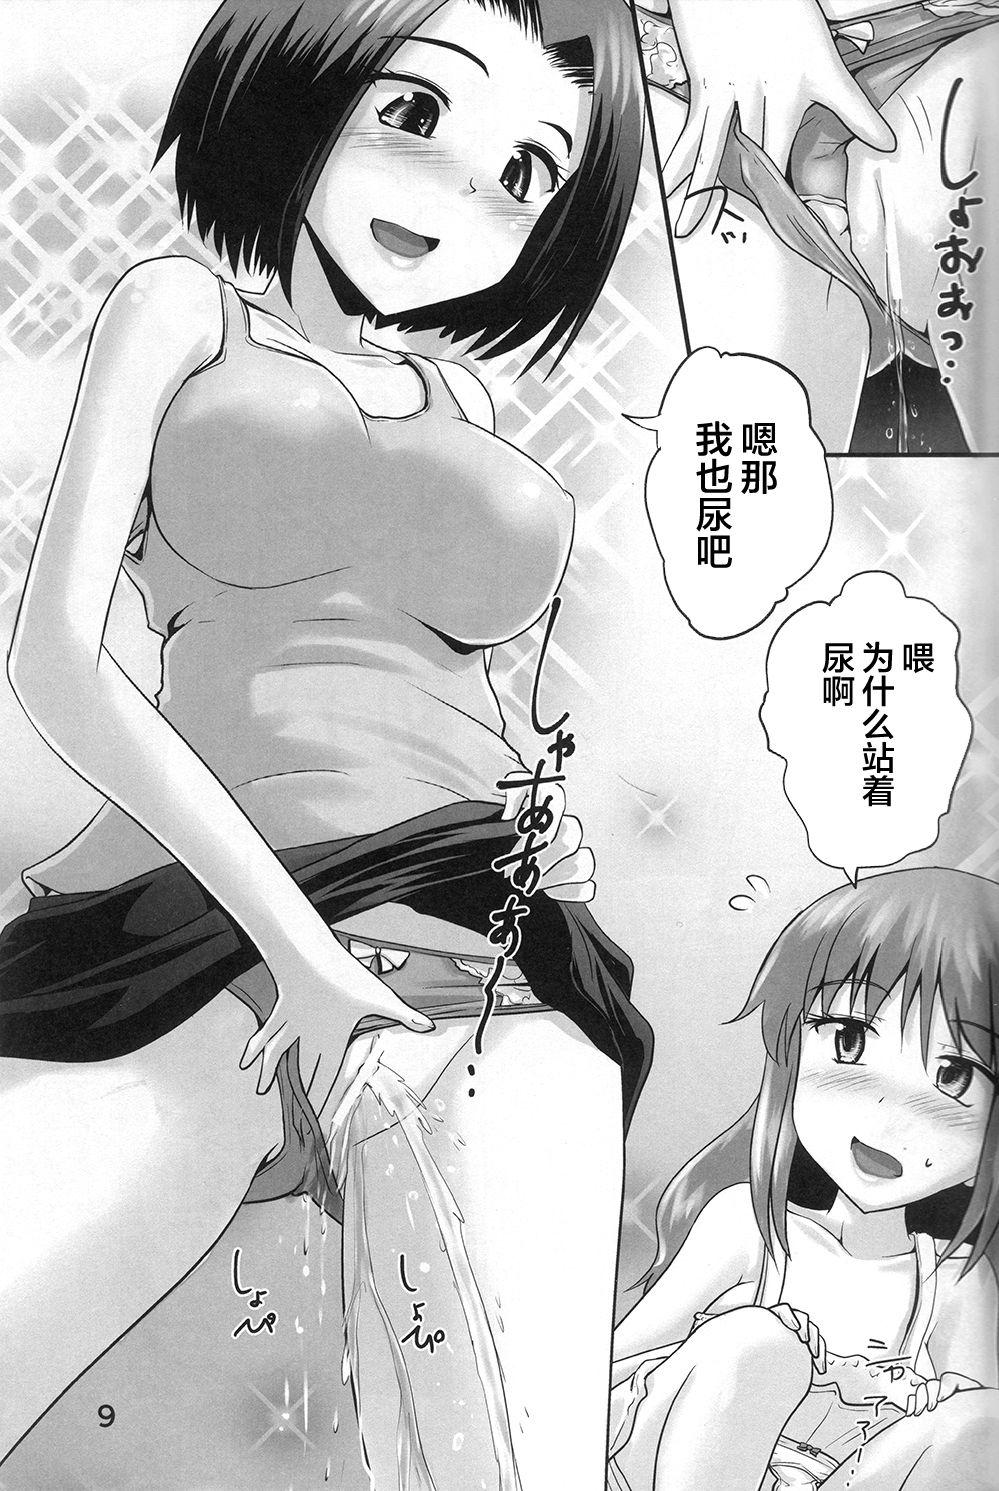 Female Domination Suzu no Shitatari 23 - Original Police - Page 9